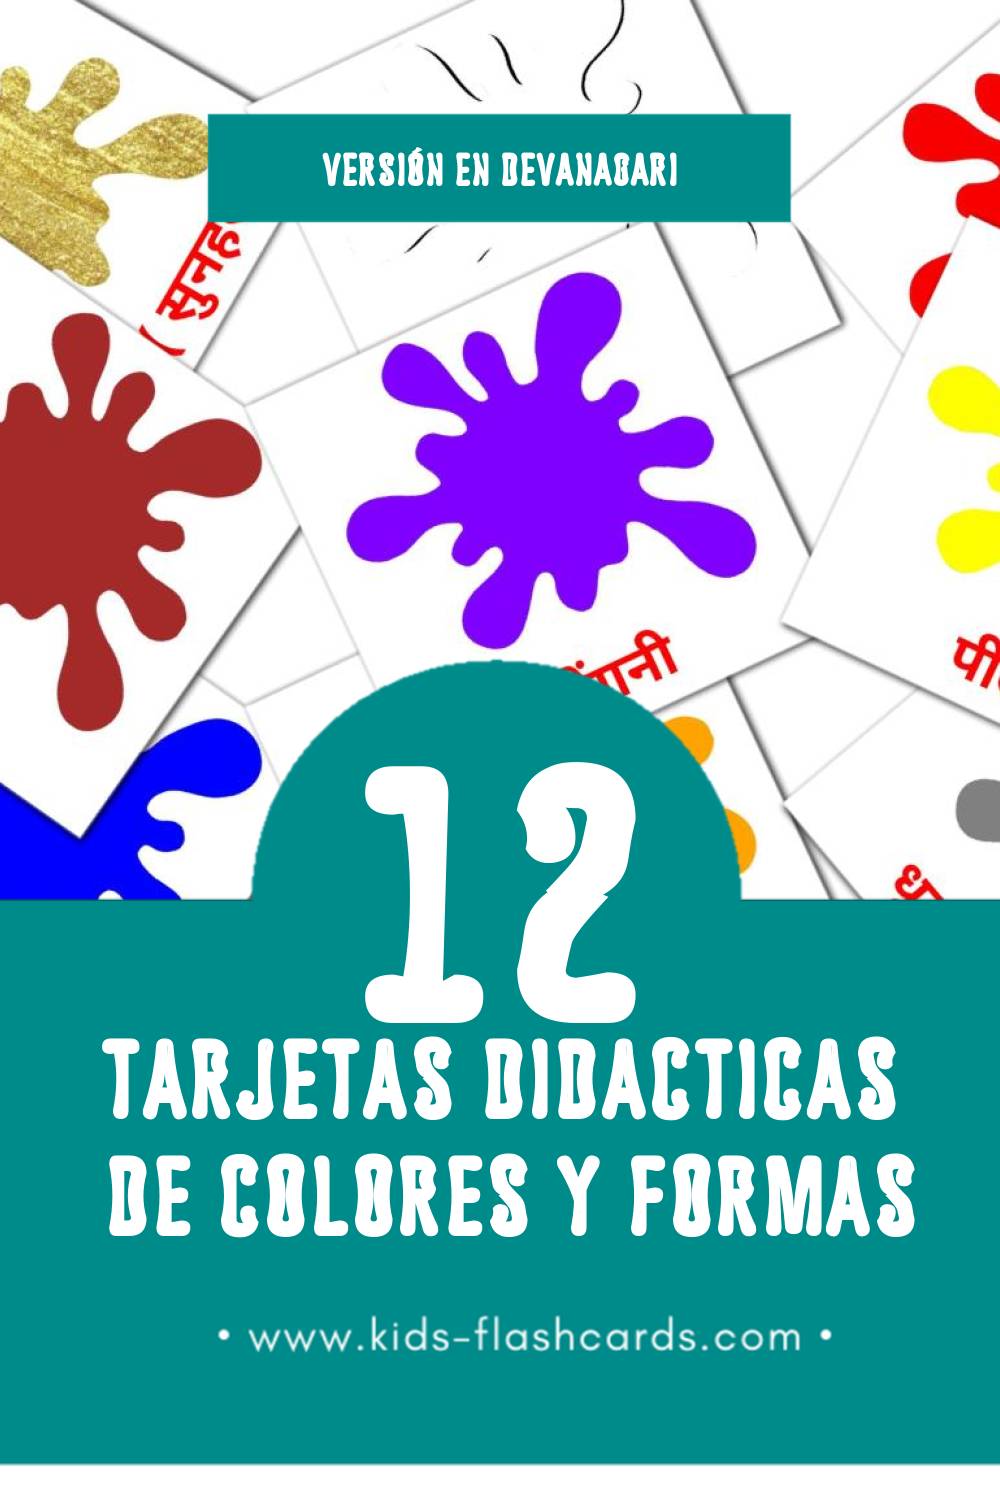 Tarjetas visuales de रंग और आकार para niños pequeños (12 tarjetas en Devanagari)